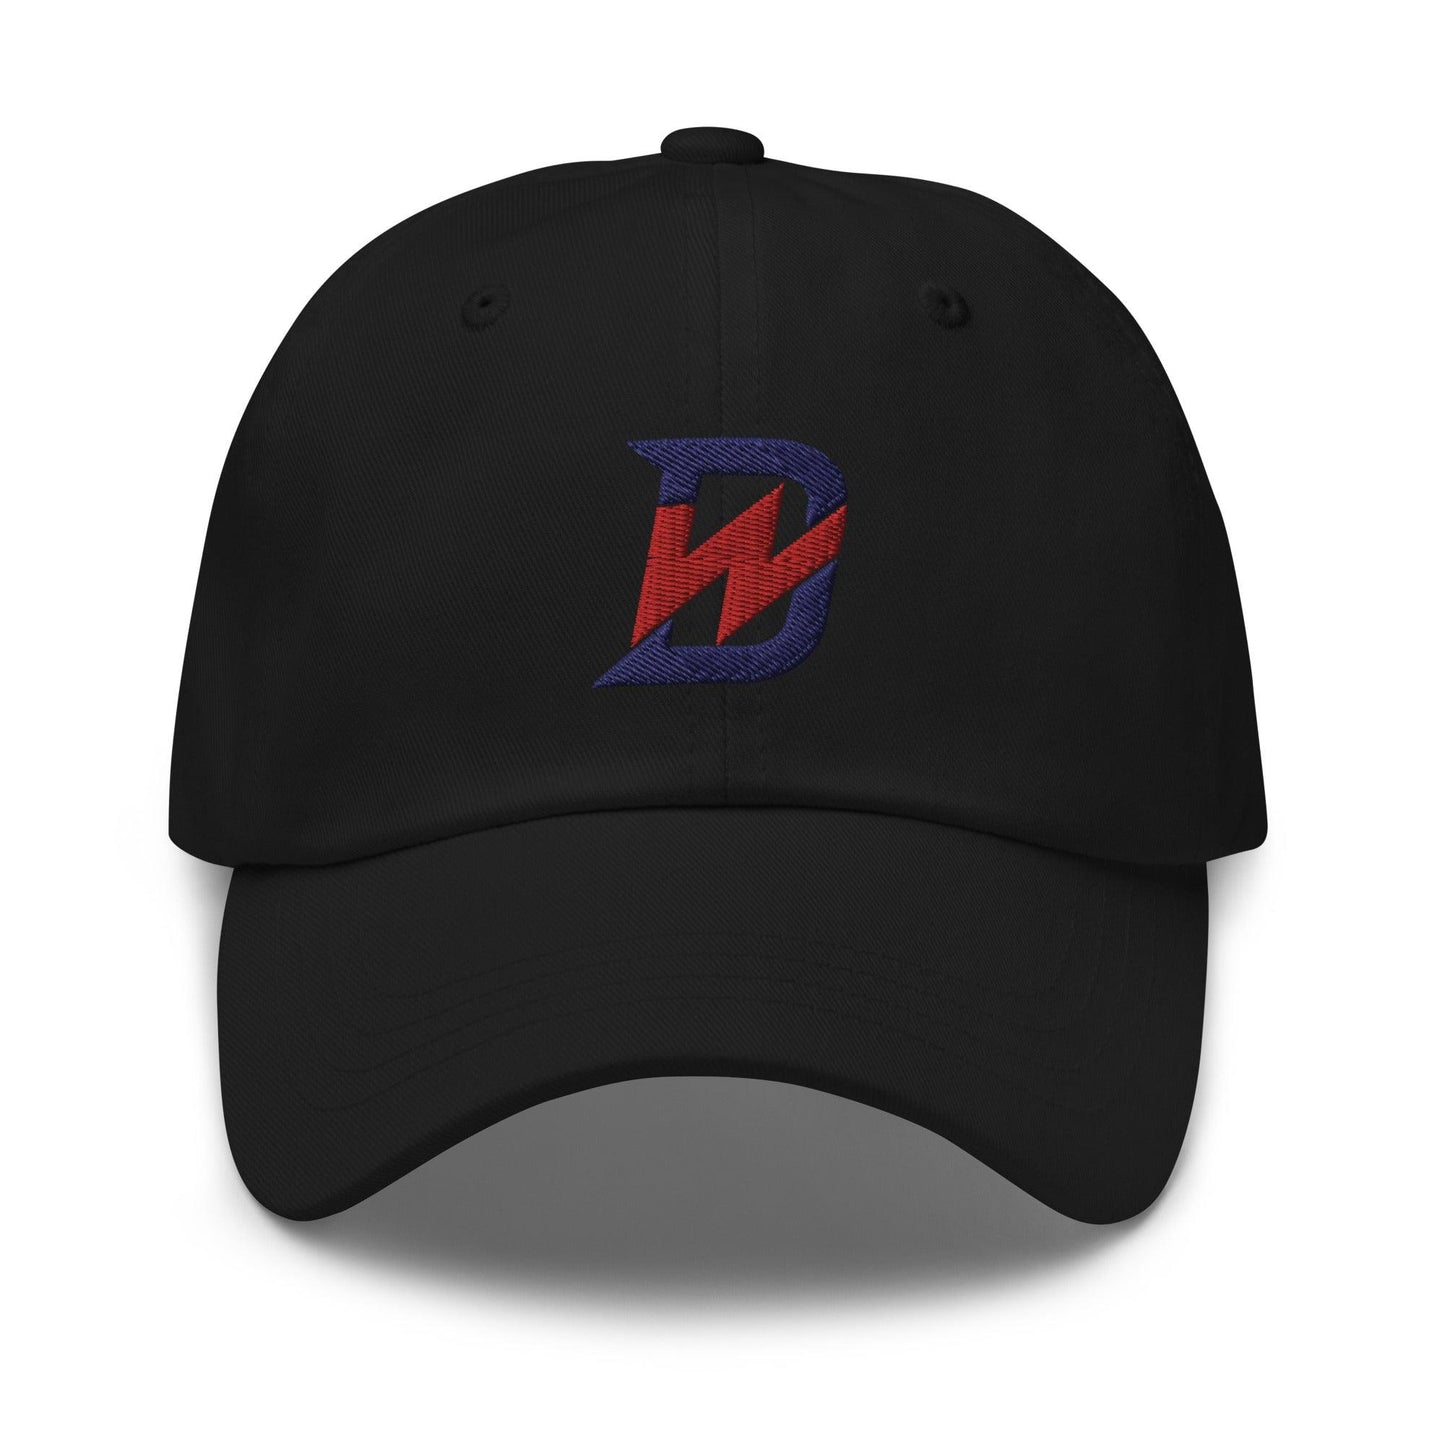 Drew Waters "DW" hat - Fan Arch